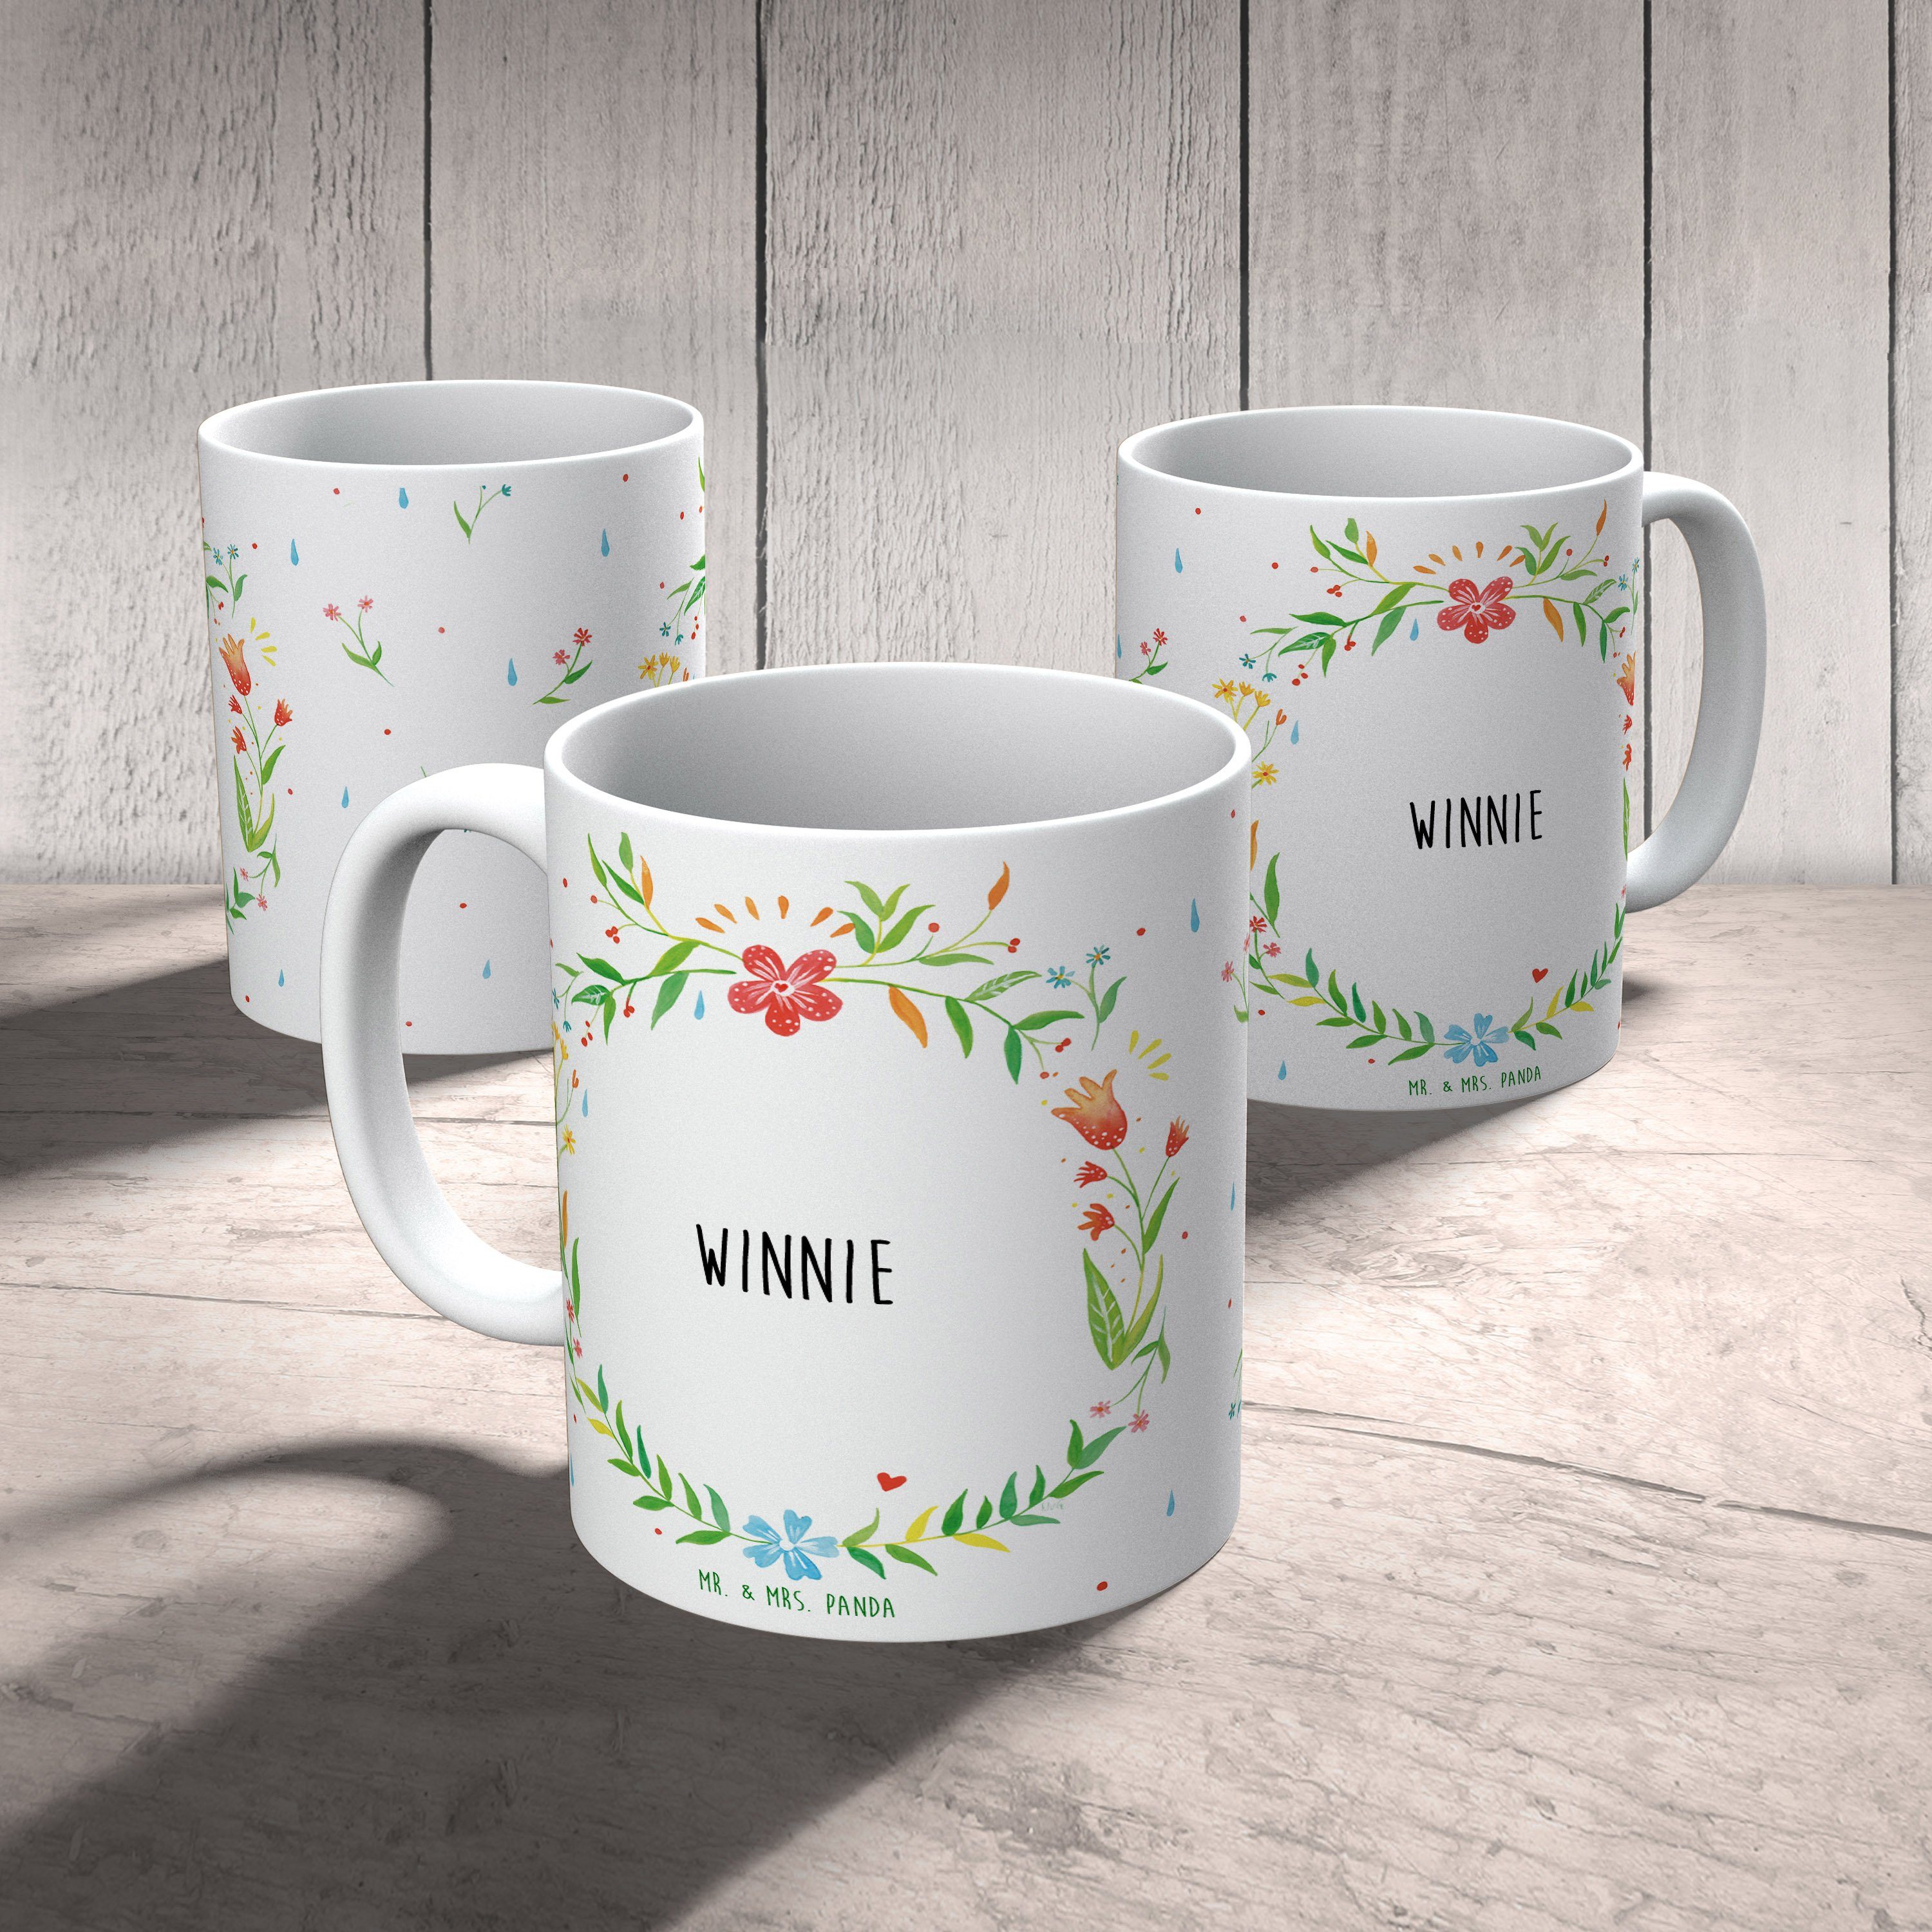 Panda Mr. Winnie Kaffeetasse, Keramik Mrs. - Porzellantasse, & Keramiktasse, Tasse Geschenk, Tasse,